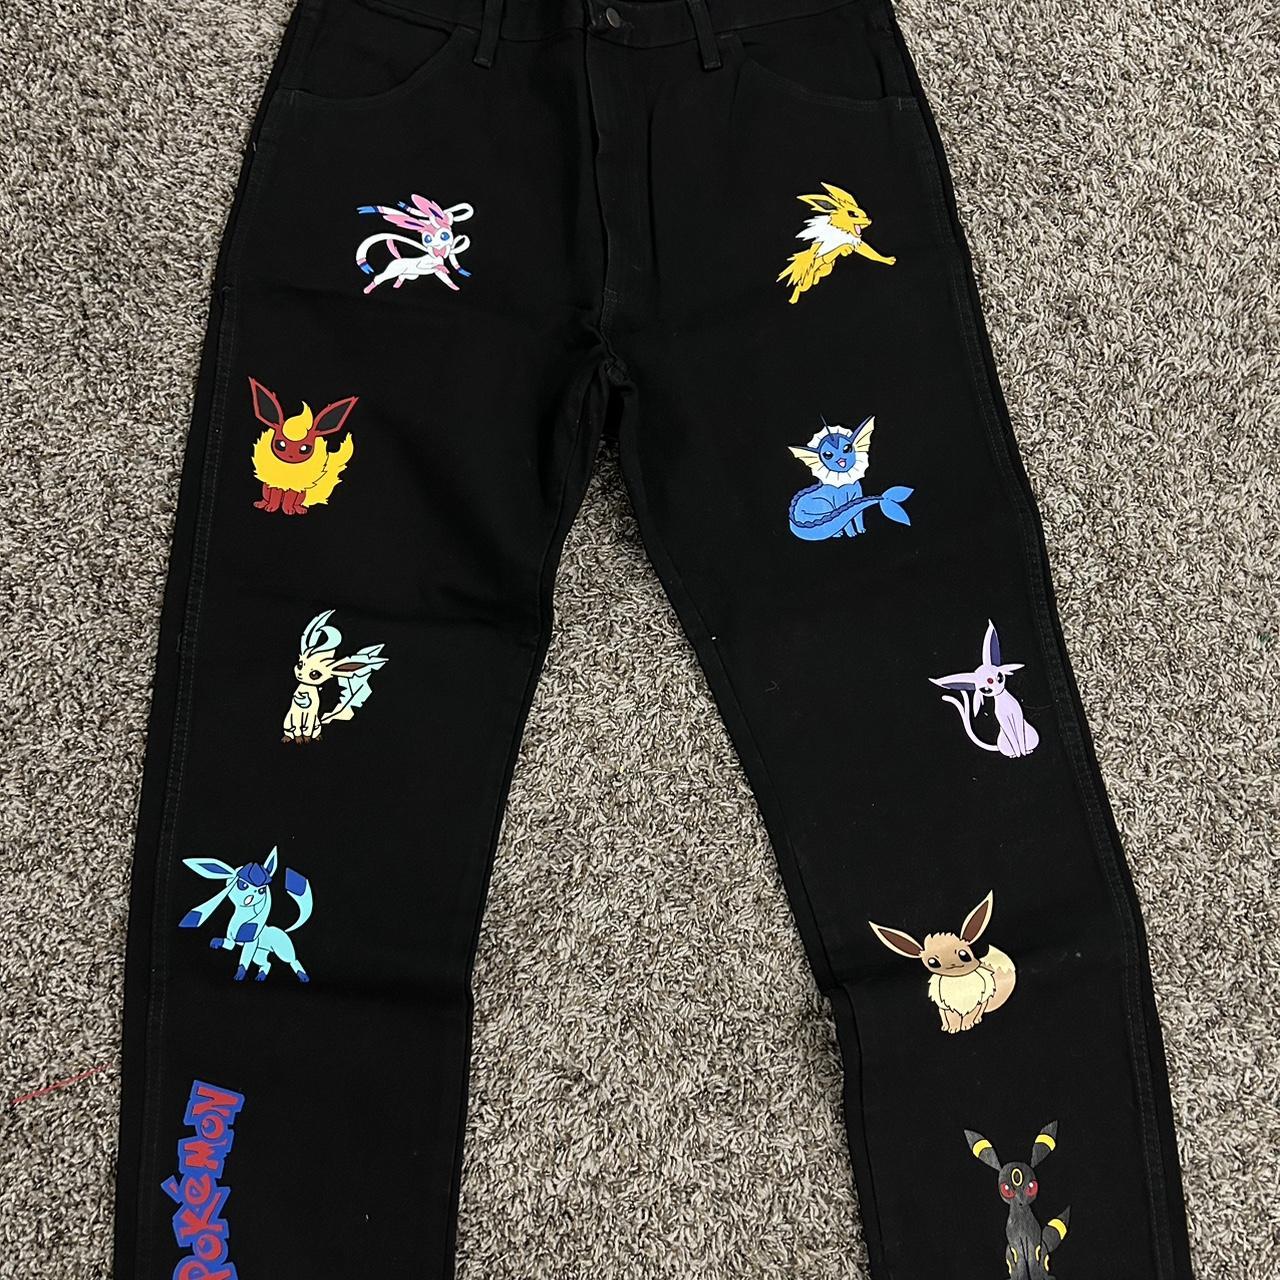 Pokémon Jeans - size 40x30 💫 Custom - 1 of 1 Depop